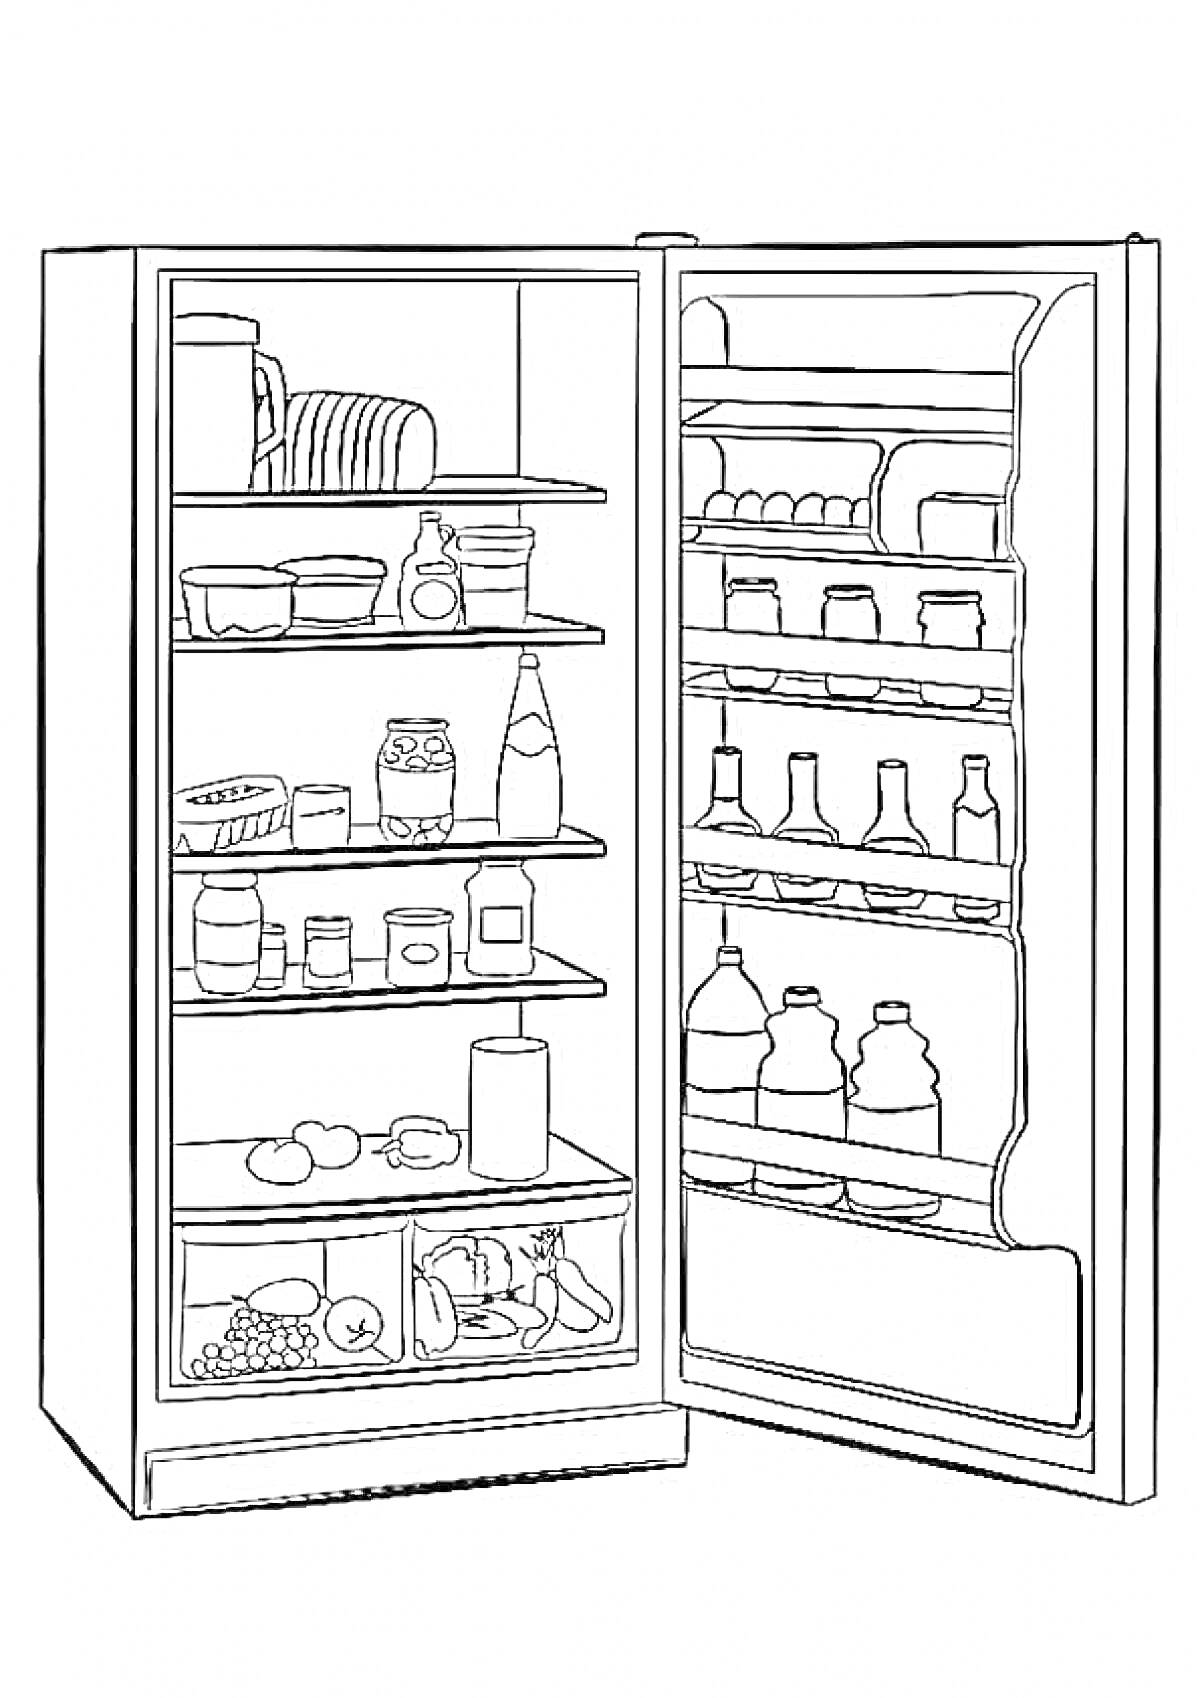 Раскраска Холодильник с продуктами: посуда, контейнеры, бутылки, банки, яйца, фрукты, овощи